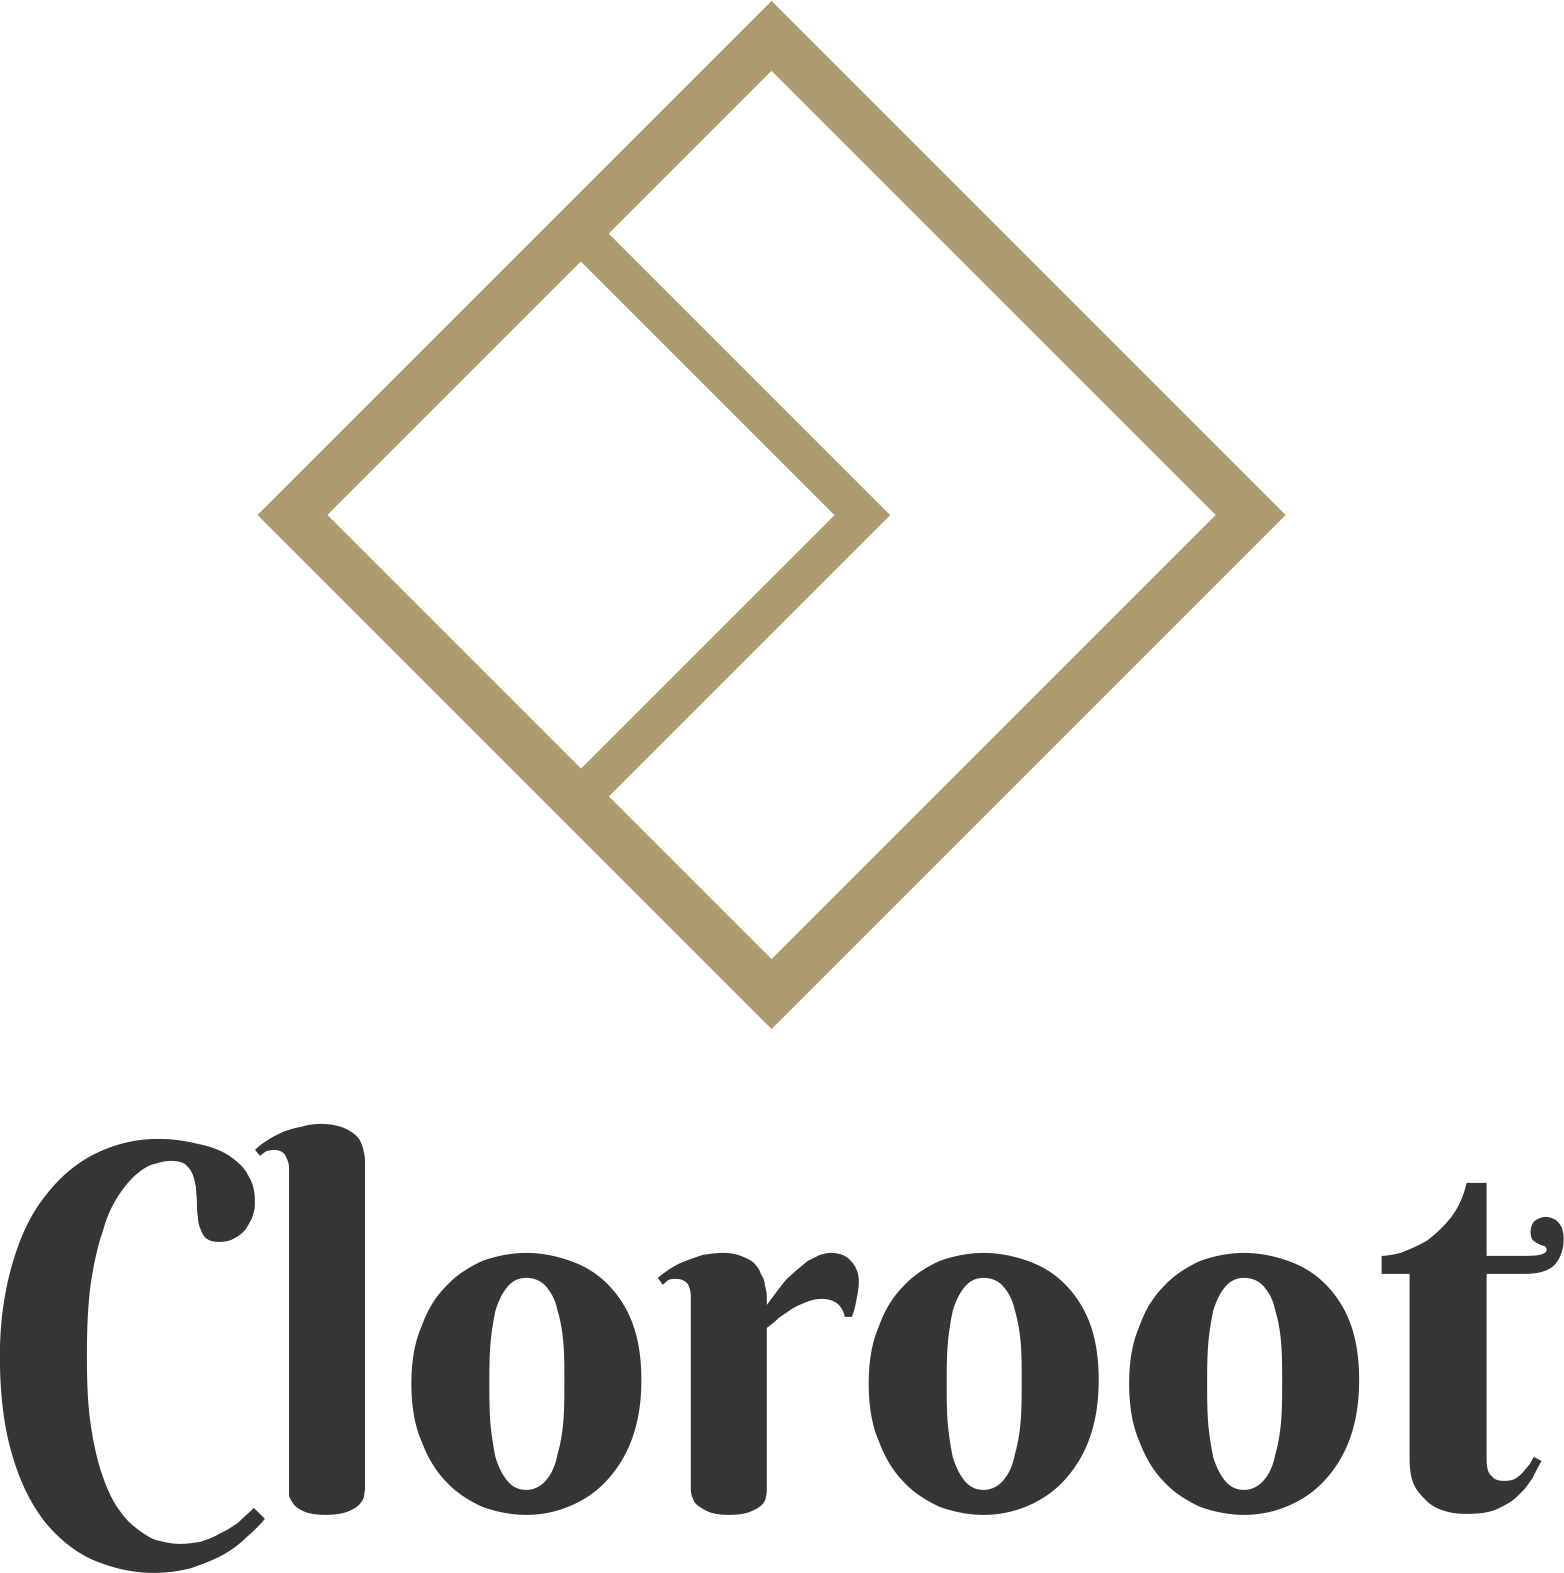 cloroot.com